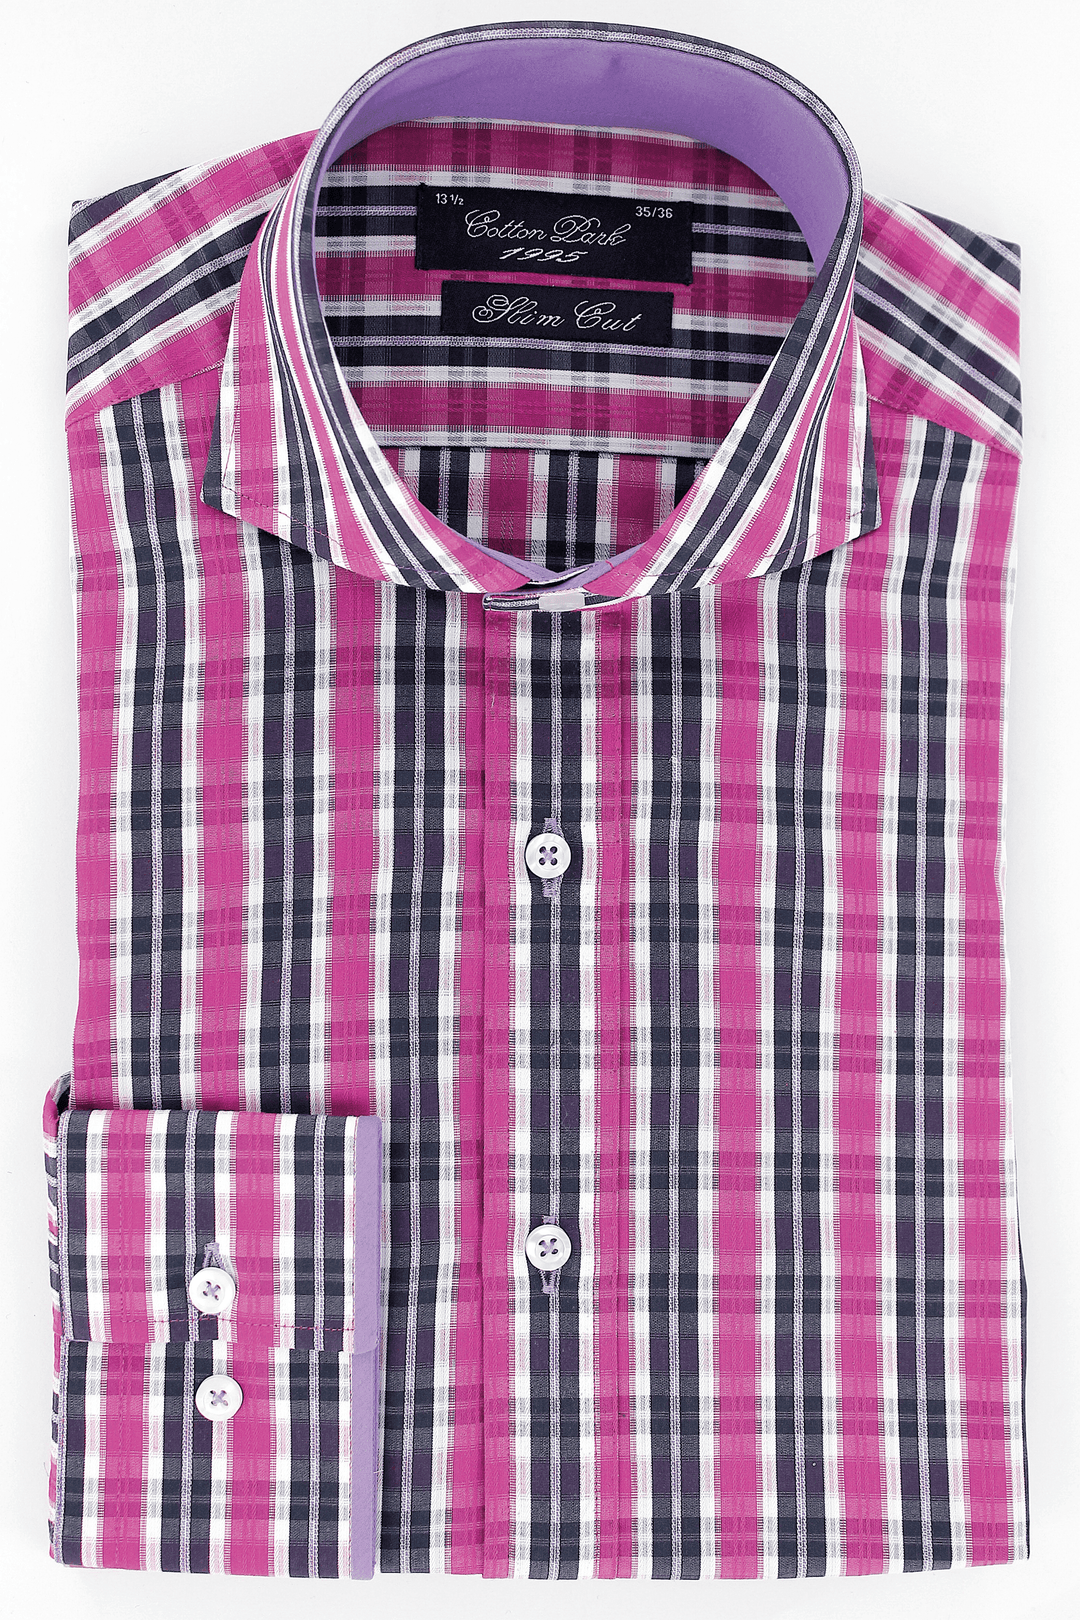 Chemise élégante pour homme cintrée à rayures roses et noires | Cotton Park